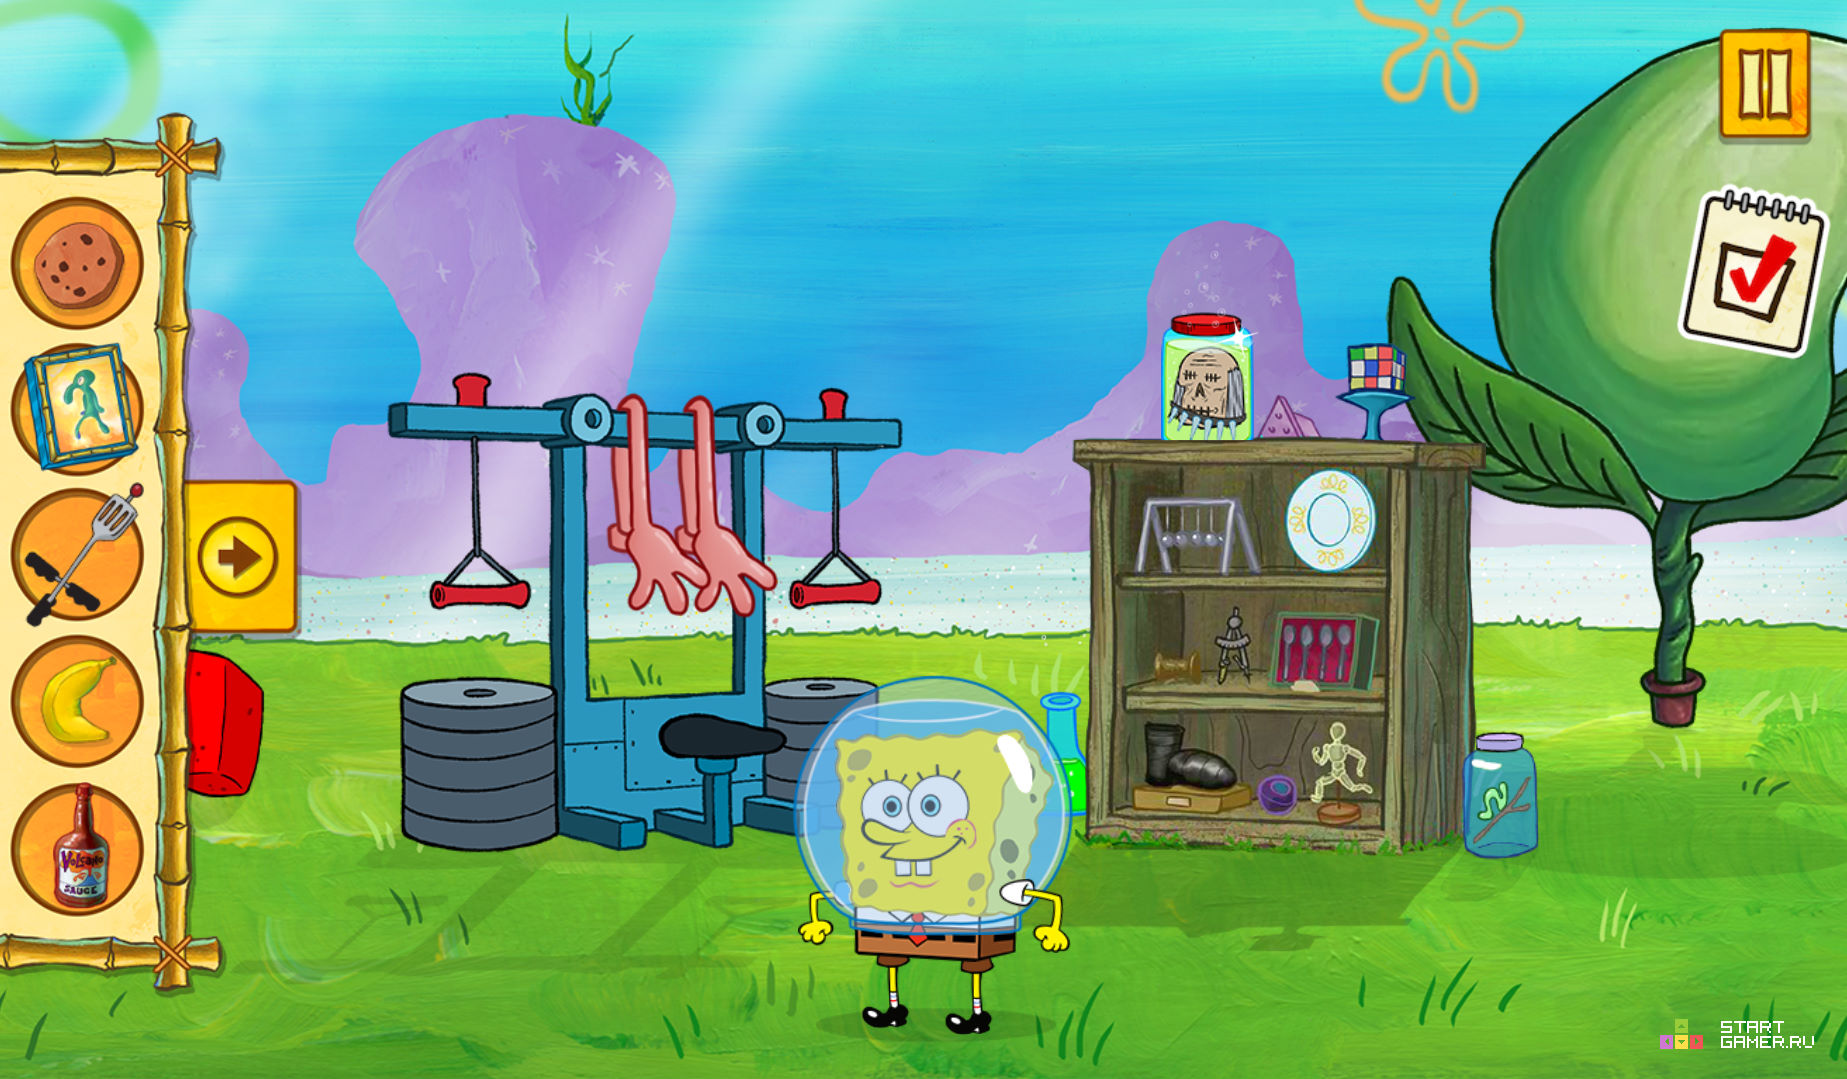 (Spongebob Saves The Day) - играть онлайн бесплатно (изображение № 4) .